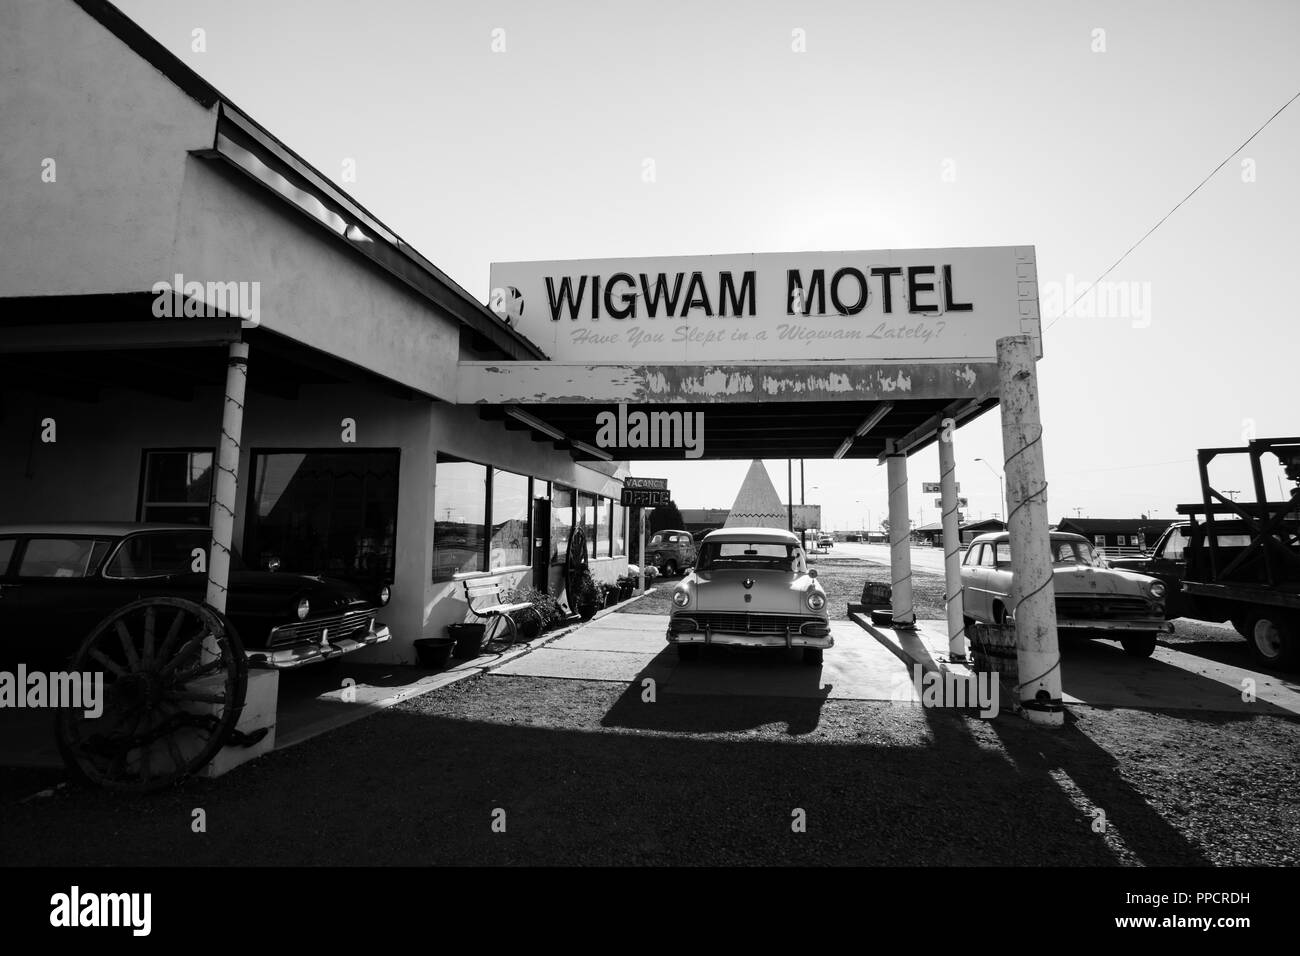 Die berühmte Route 66 Wahrzeichen - der Wigwam Motel bietet Hotelgästen in einem konkreten Wigwam Struktur zu schlafen. Oldtimer in den nostalgischen Charme. Stockfoto